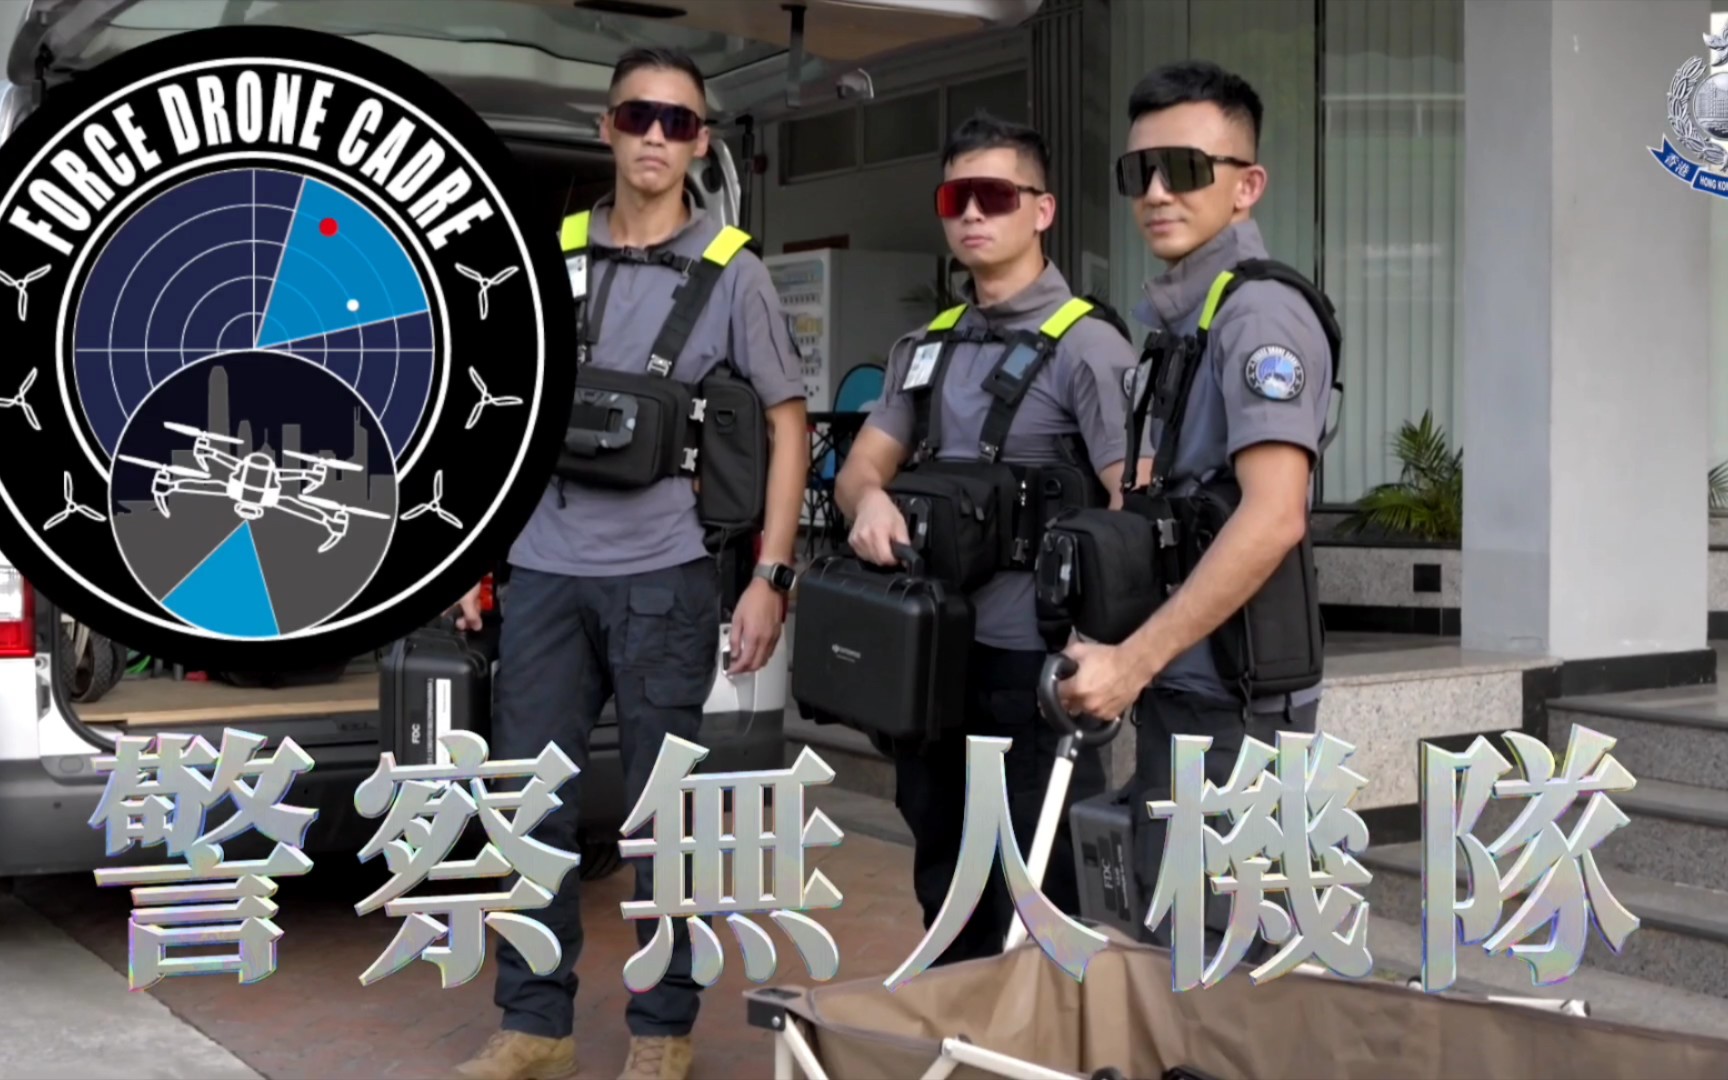 香港警察图片壁纸图片